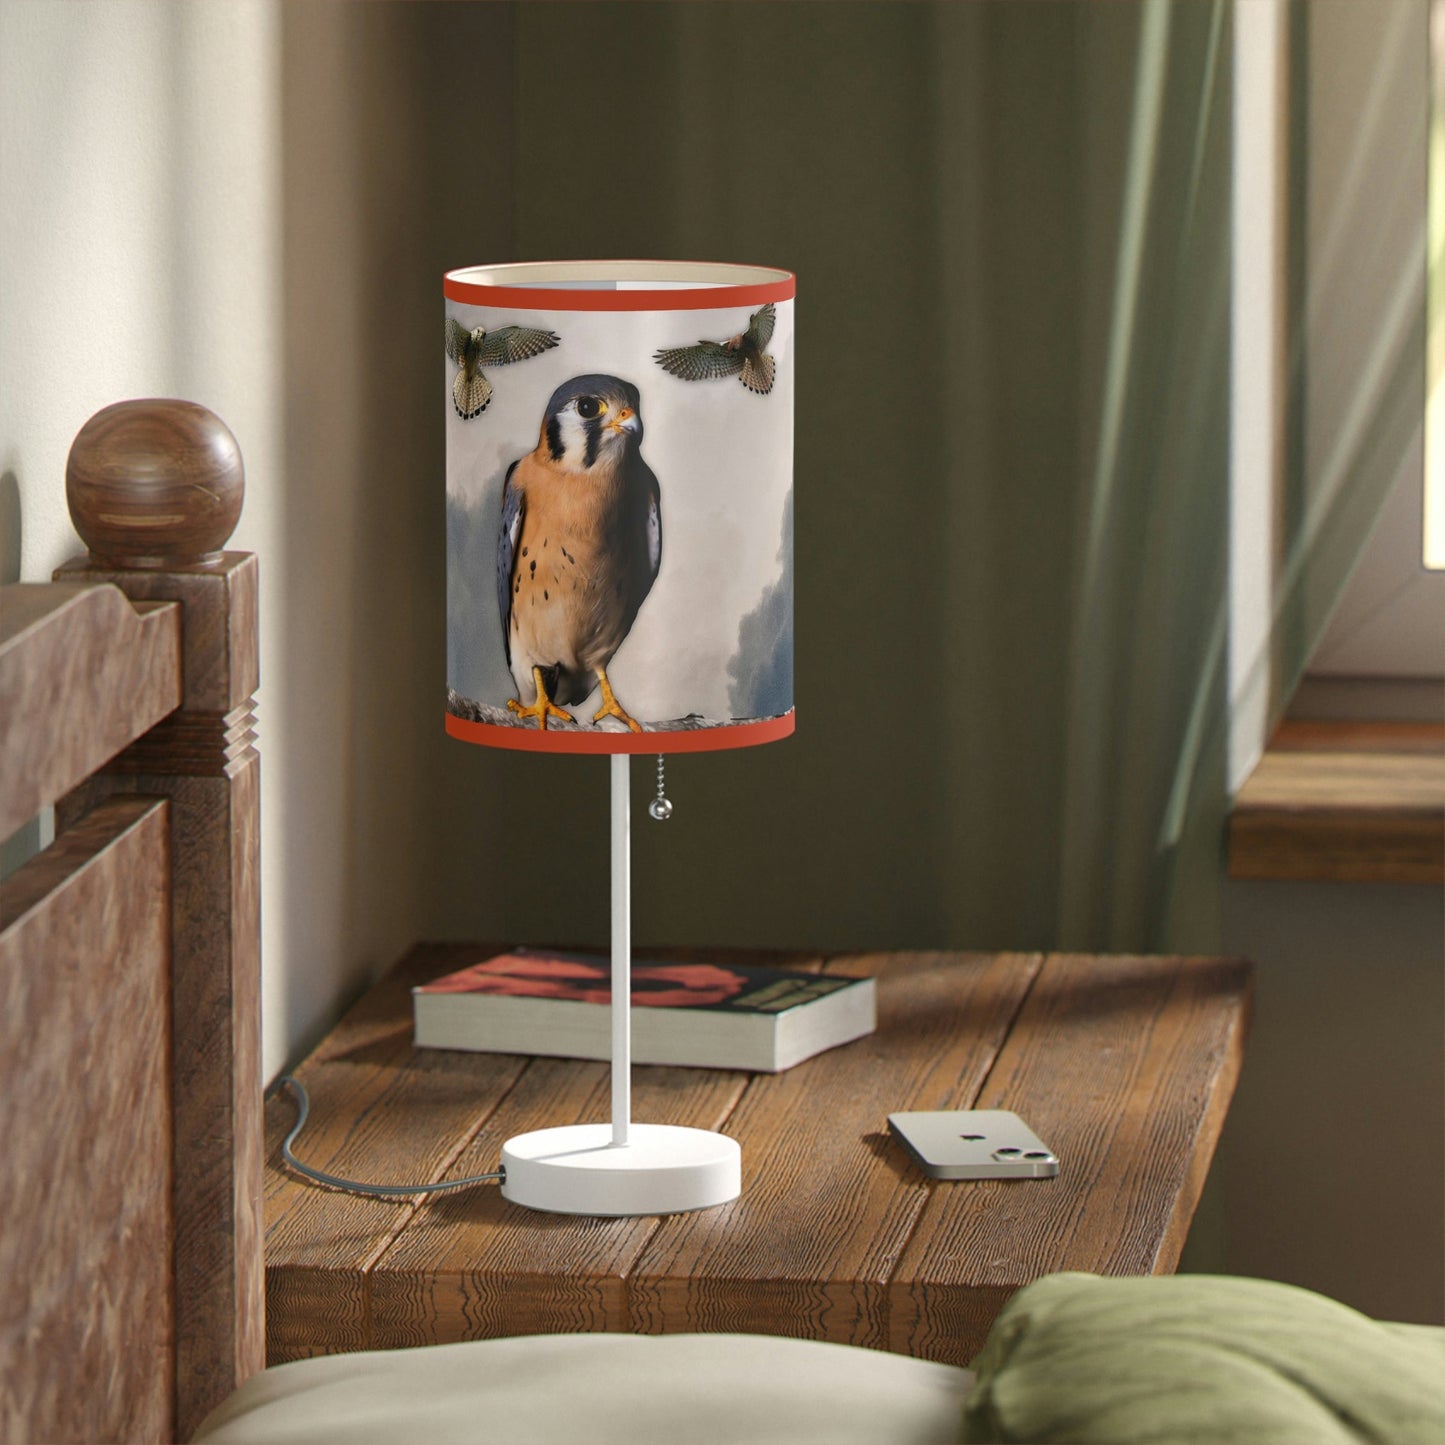 Kestrel Lamp on a Stand, US|CA plug